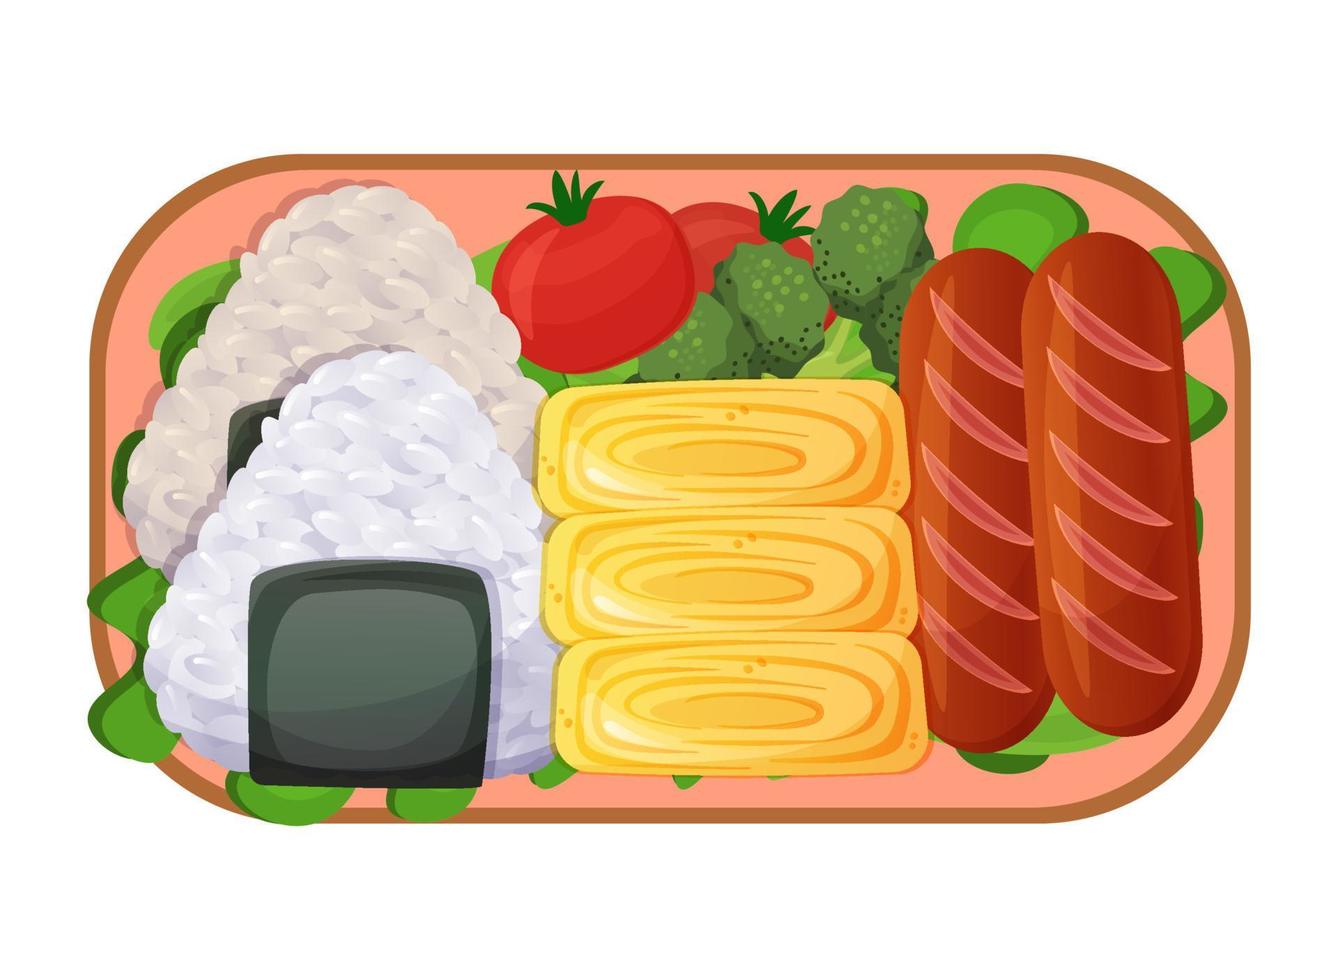 Bento japanische Lunchbox mit Onigiri, Gemüse, Eiern, Würstchen. asiatisches Essen. bunte Vektorillustration lokalisiert auf weißem Hintergrund. vektor